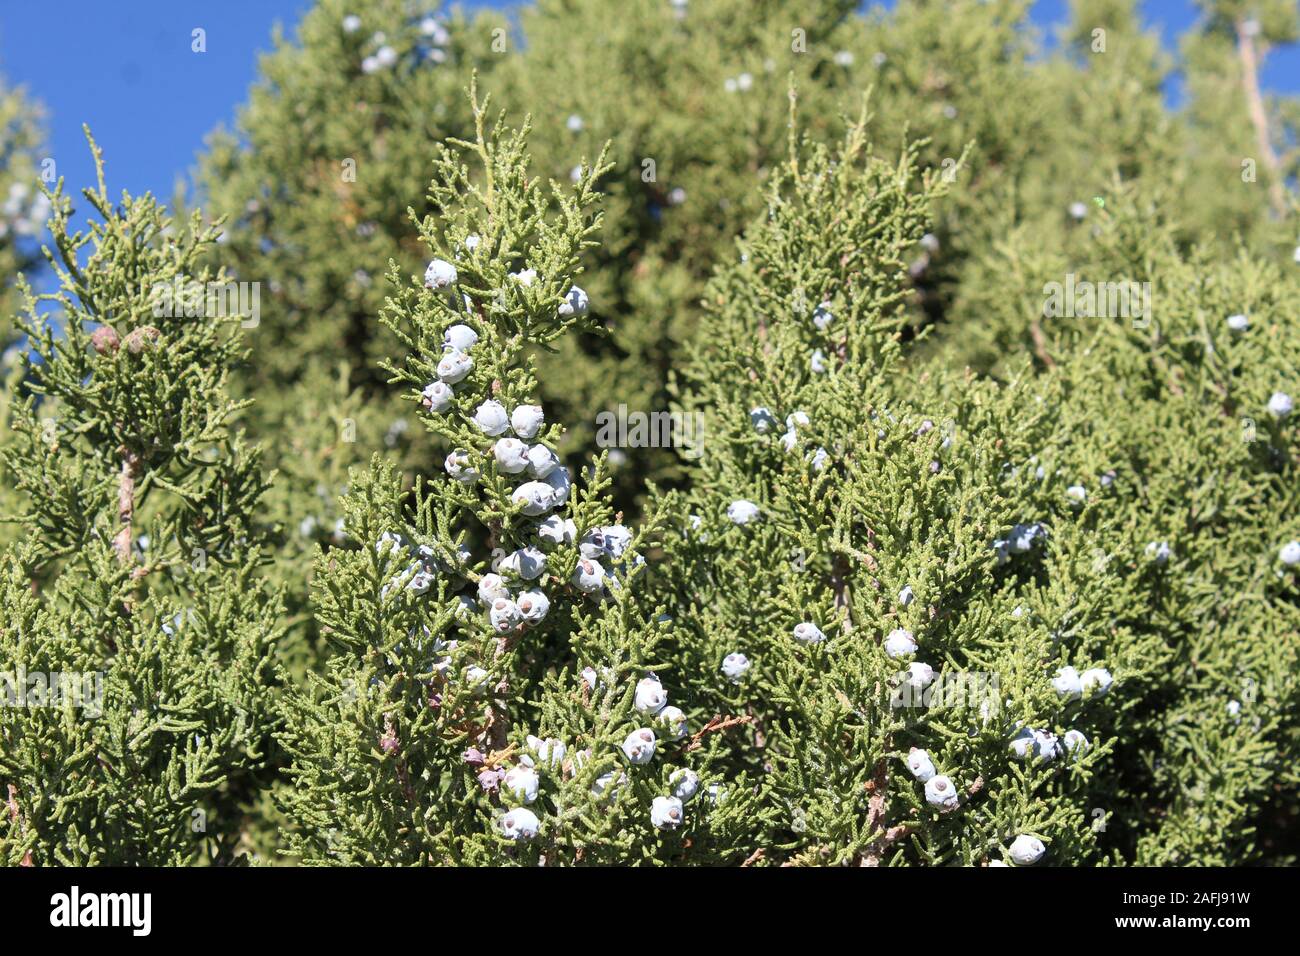 Coni di semi di questo Sud del Deserto Mojave vegetale nativo della California, Ginepro, Juniperus californica, eventualmente sever e competere per crescere. Foto Stock